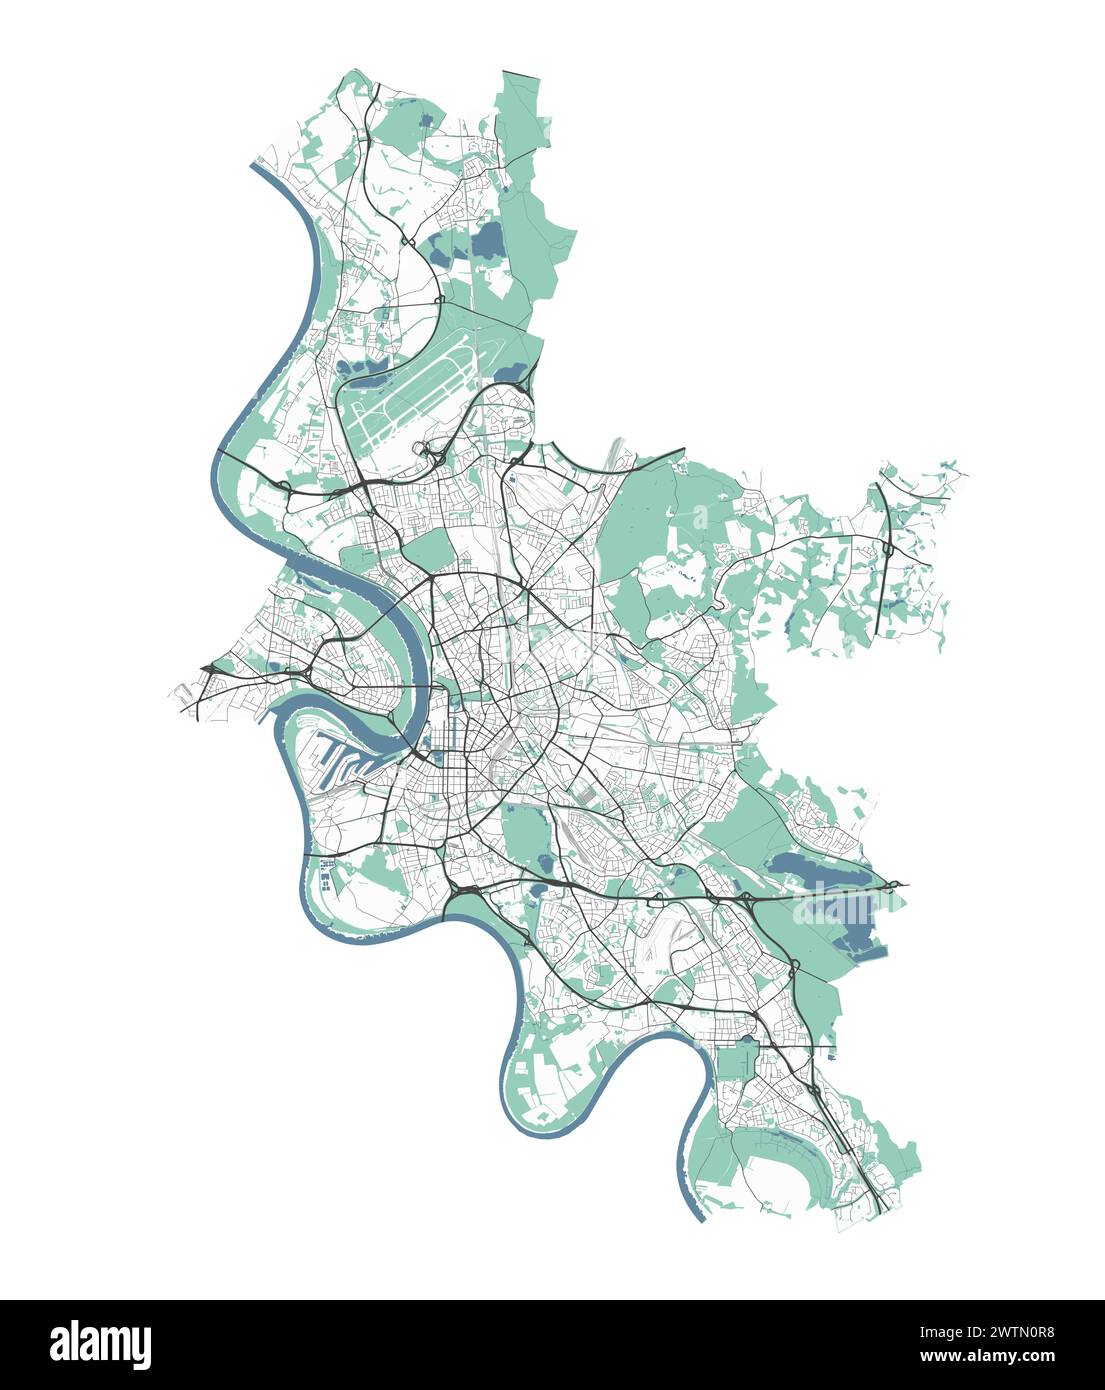 Mappa di Dusseldorf, Germania. Mappa vettoriale dettagliata della città, area metropolitana con confine. Mappa stradale con strade e acqua. Illustrazione Vettoriale